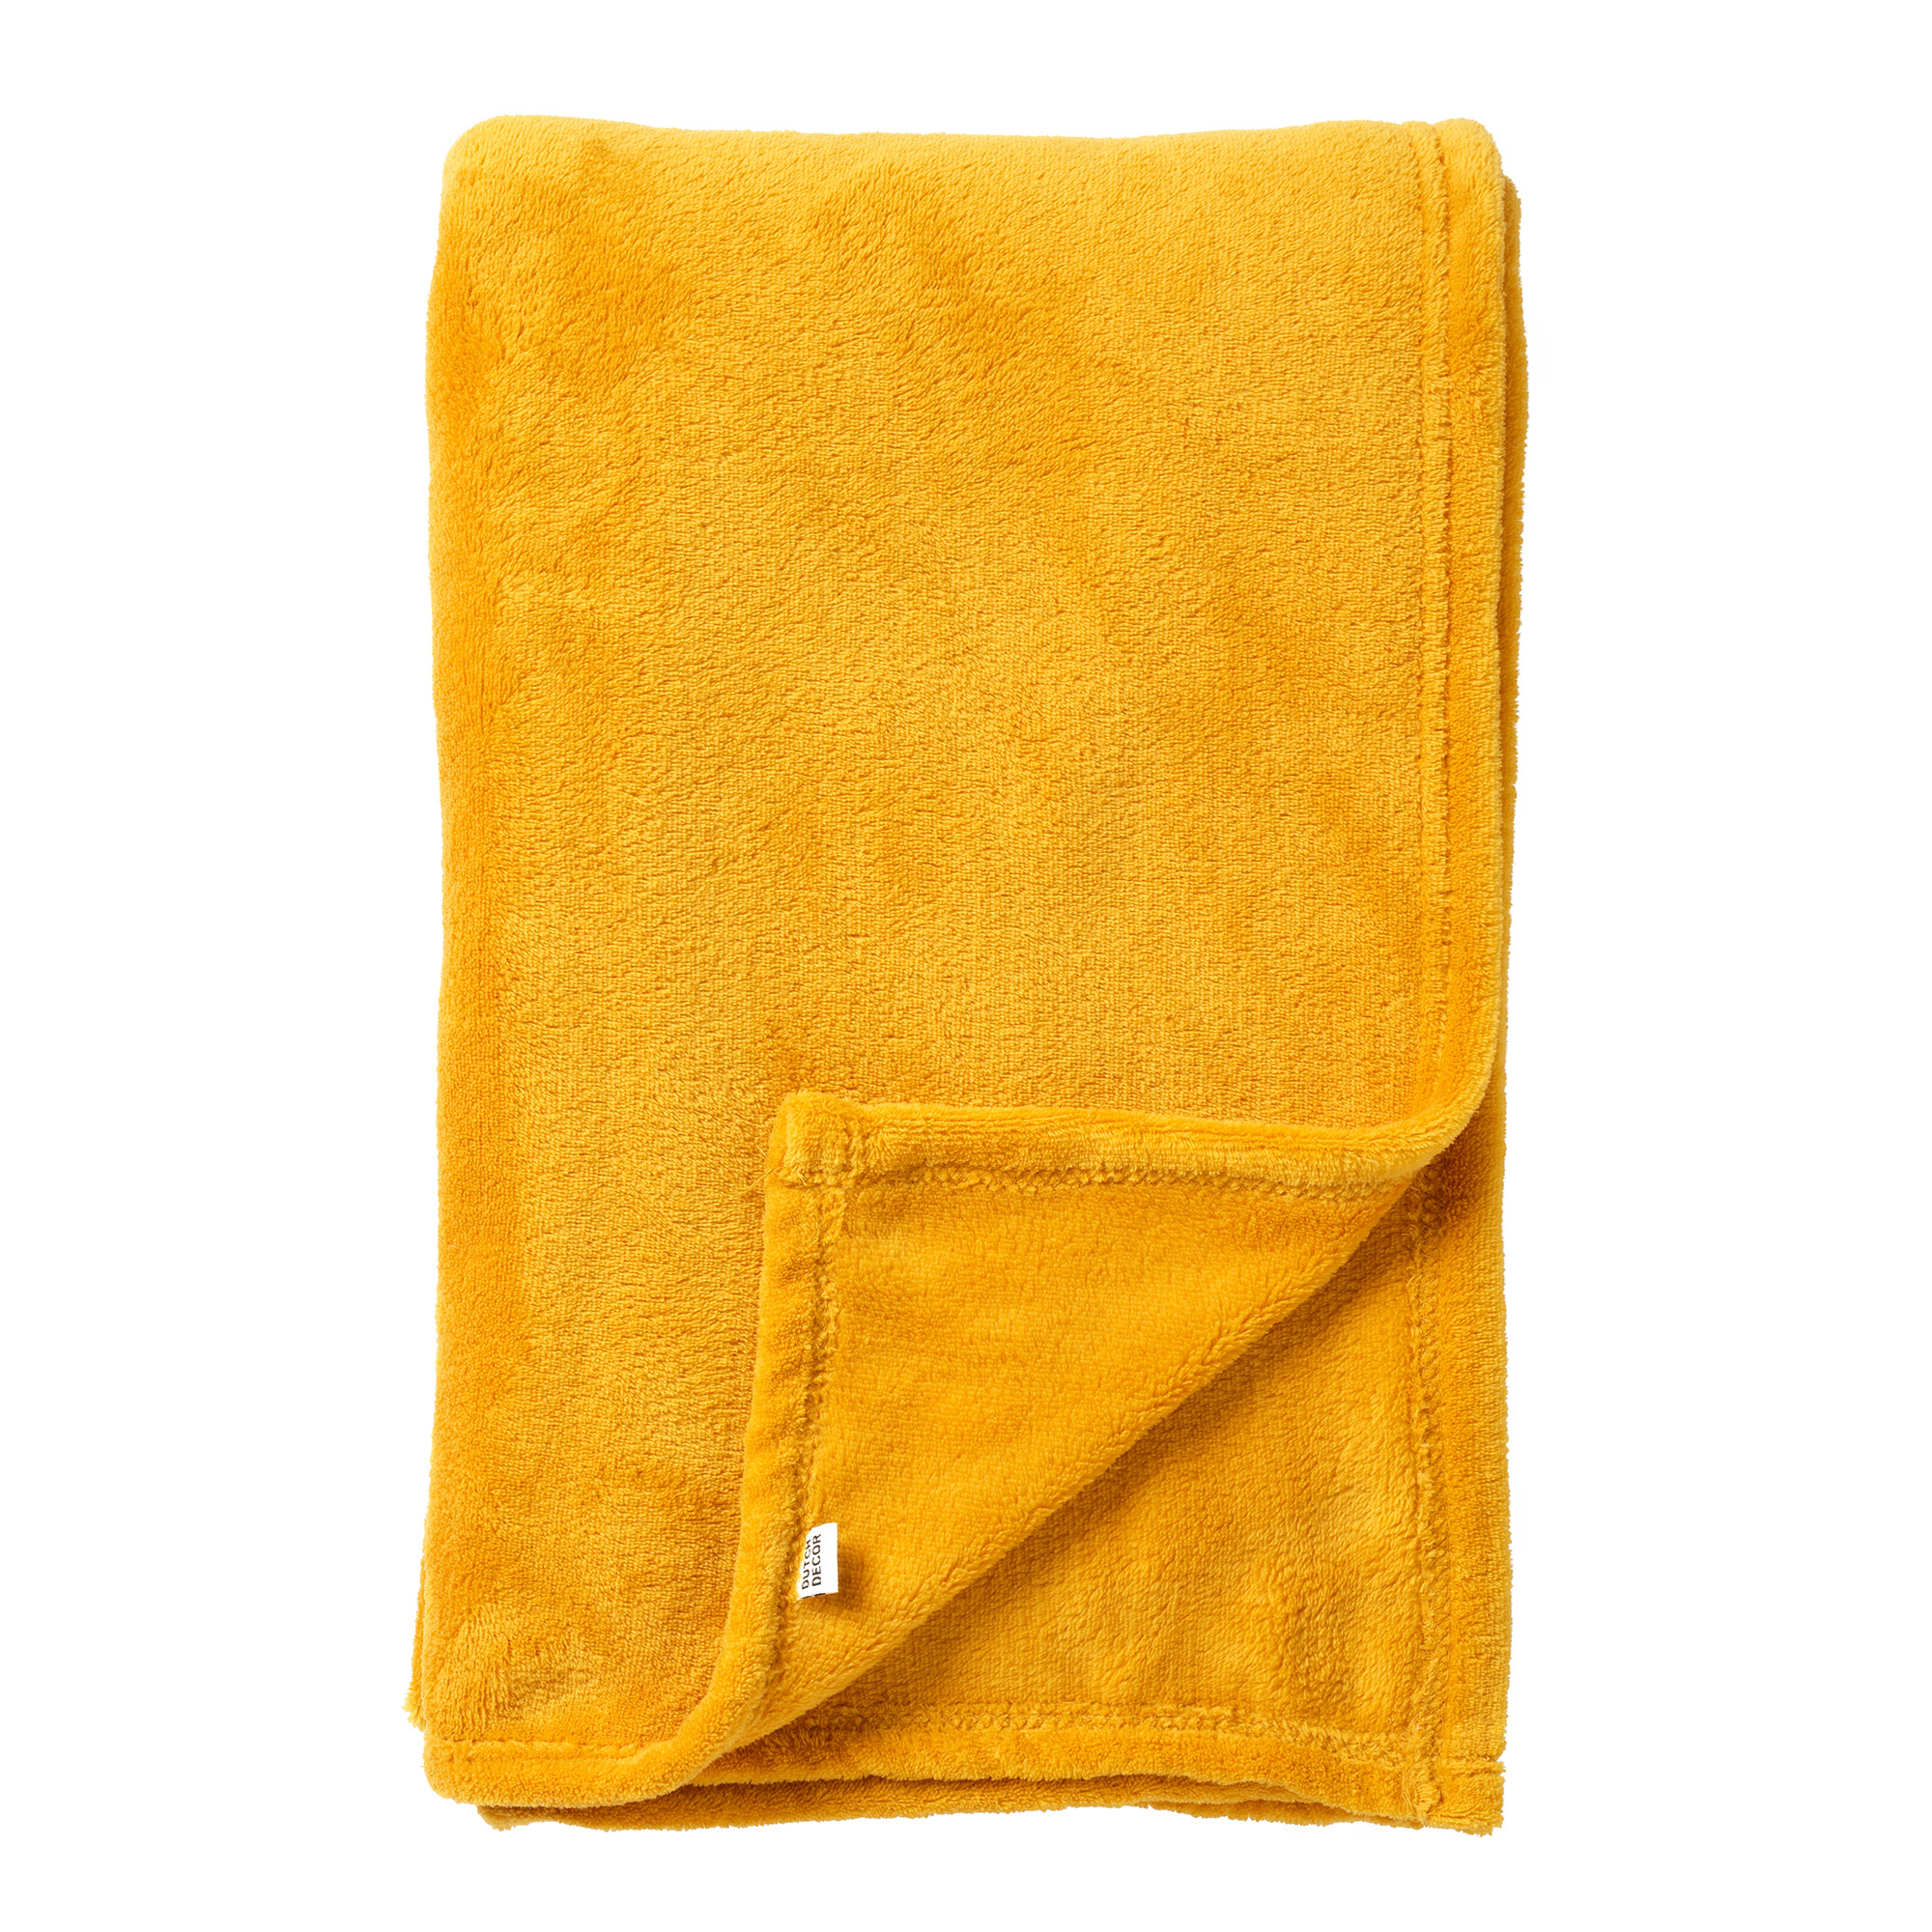 SIDNEY - Plaid 140x180 cm - Fleece deken van 100% gerecycled polyester – superzacht - Eco Line collectie - Golden Glow - geel